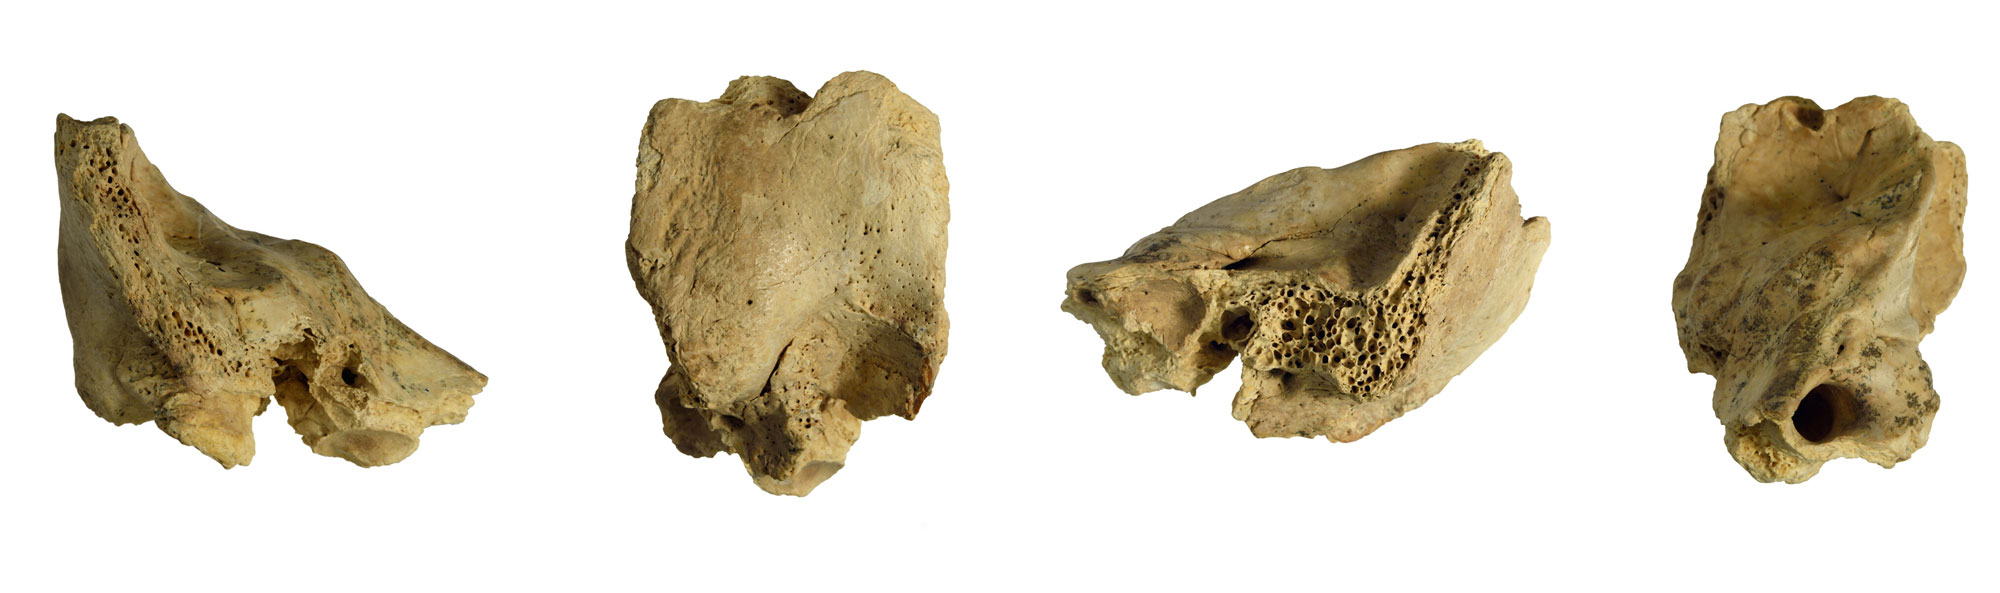 Inner ear fossil, Cova Negra, Spain